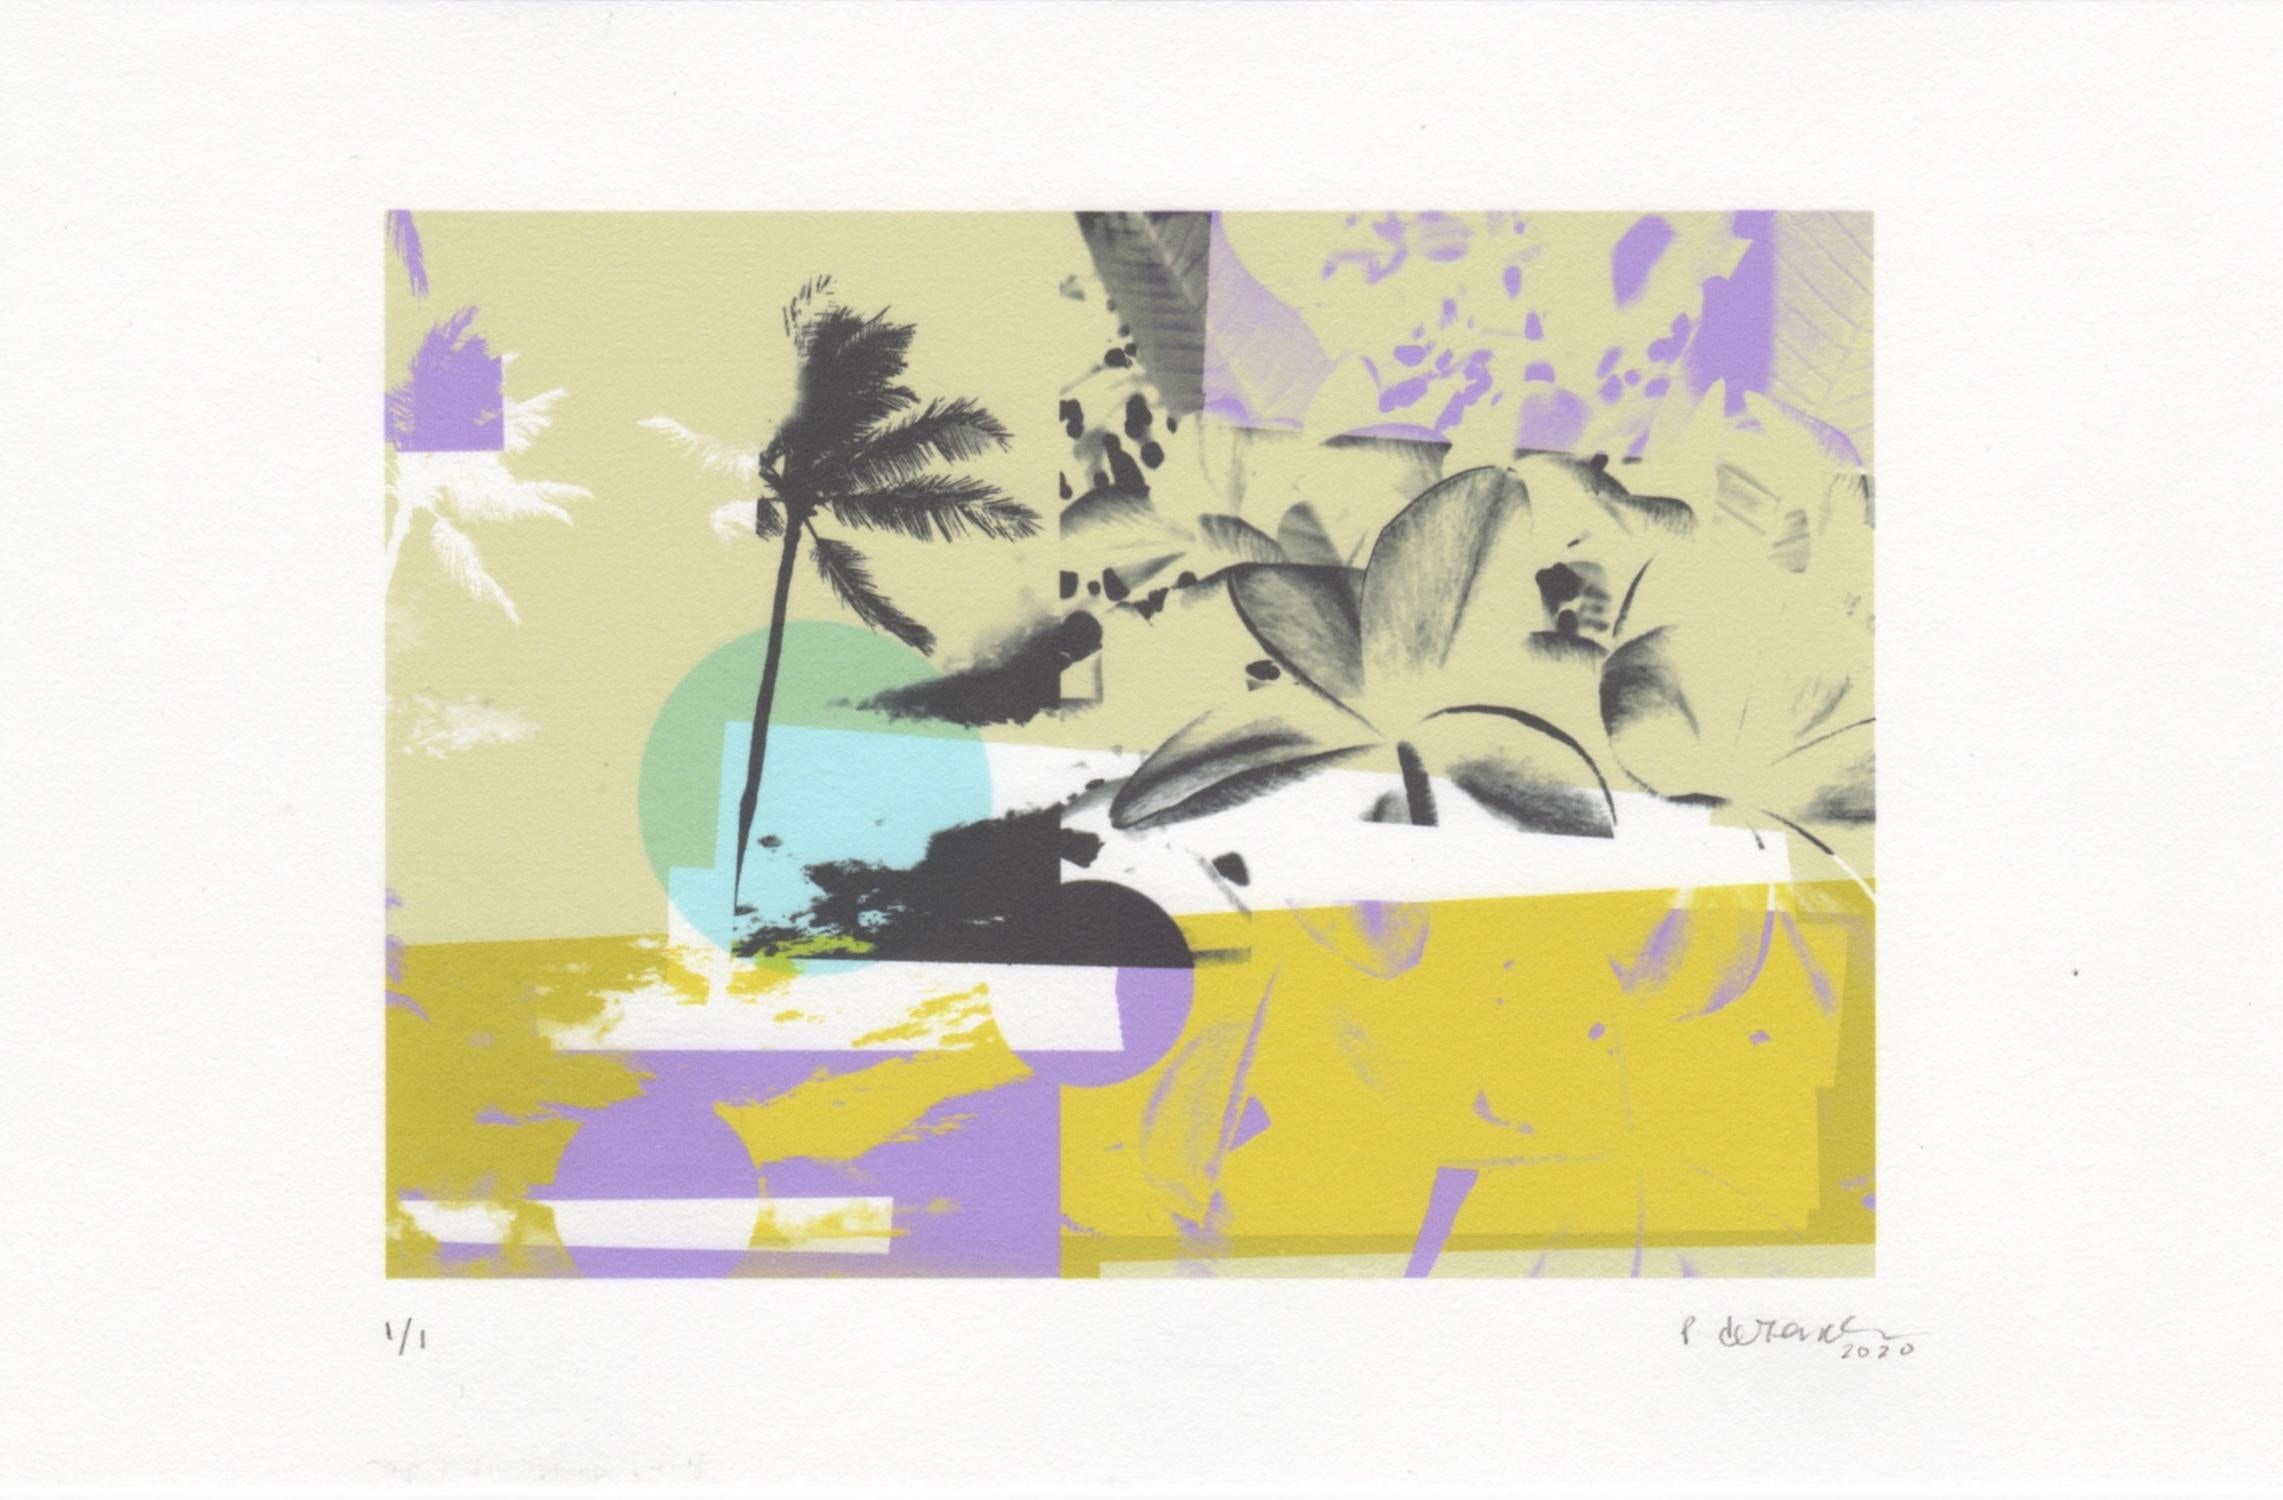 „Greetings from Hawaii“, abstrakt, Architektur, Flora, gelb, grün, Druck – Print von Patty deGrandpre